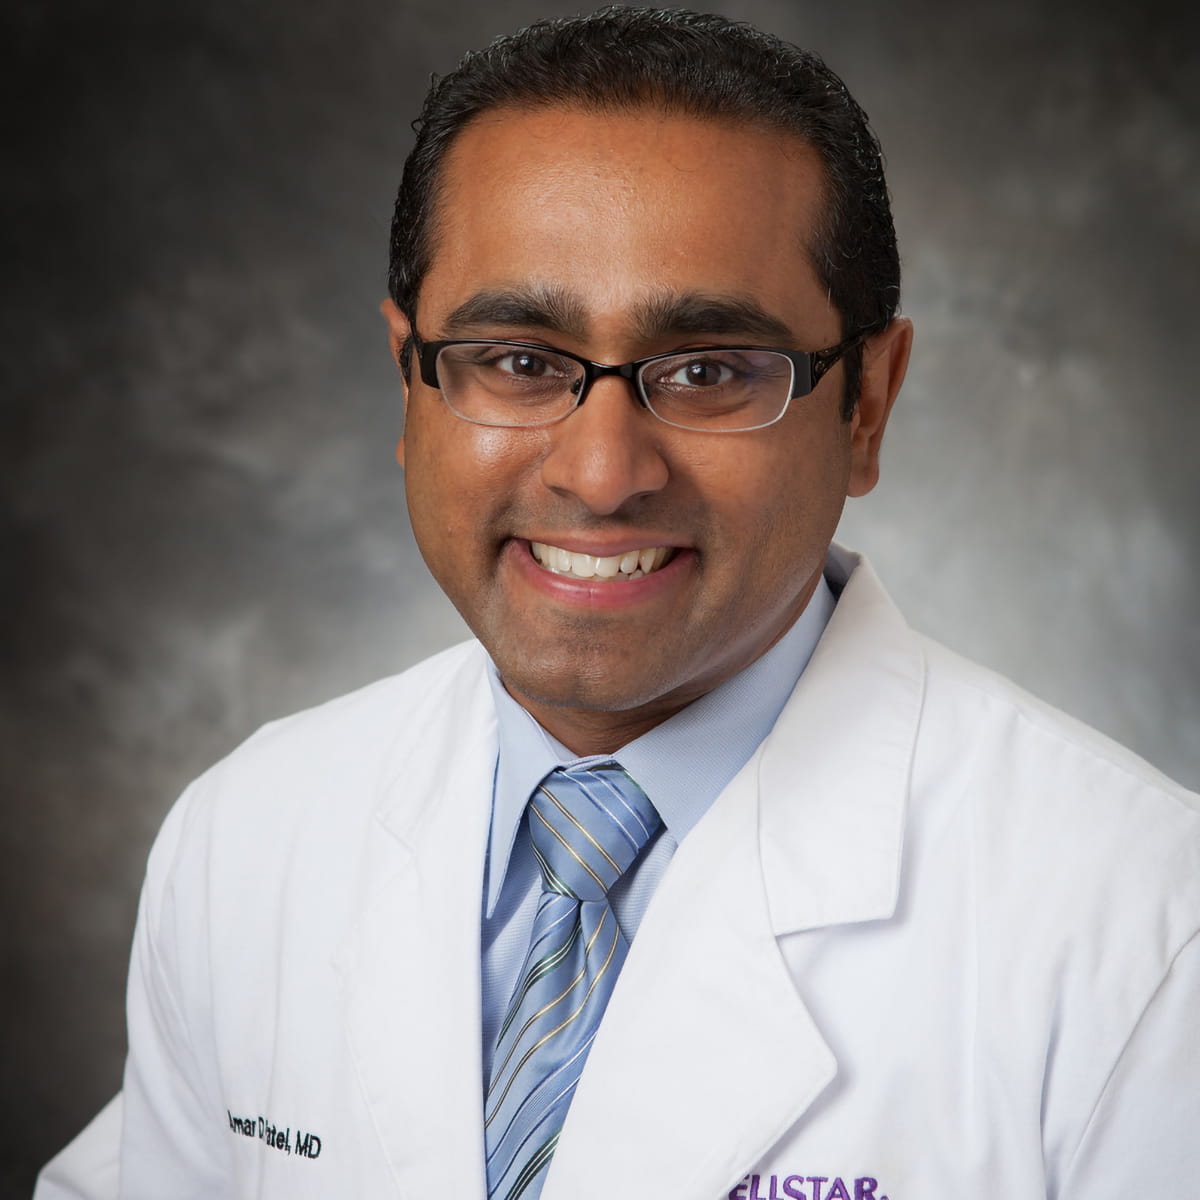 A friendly headshot of Amar Patel, MD